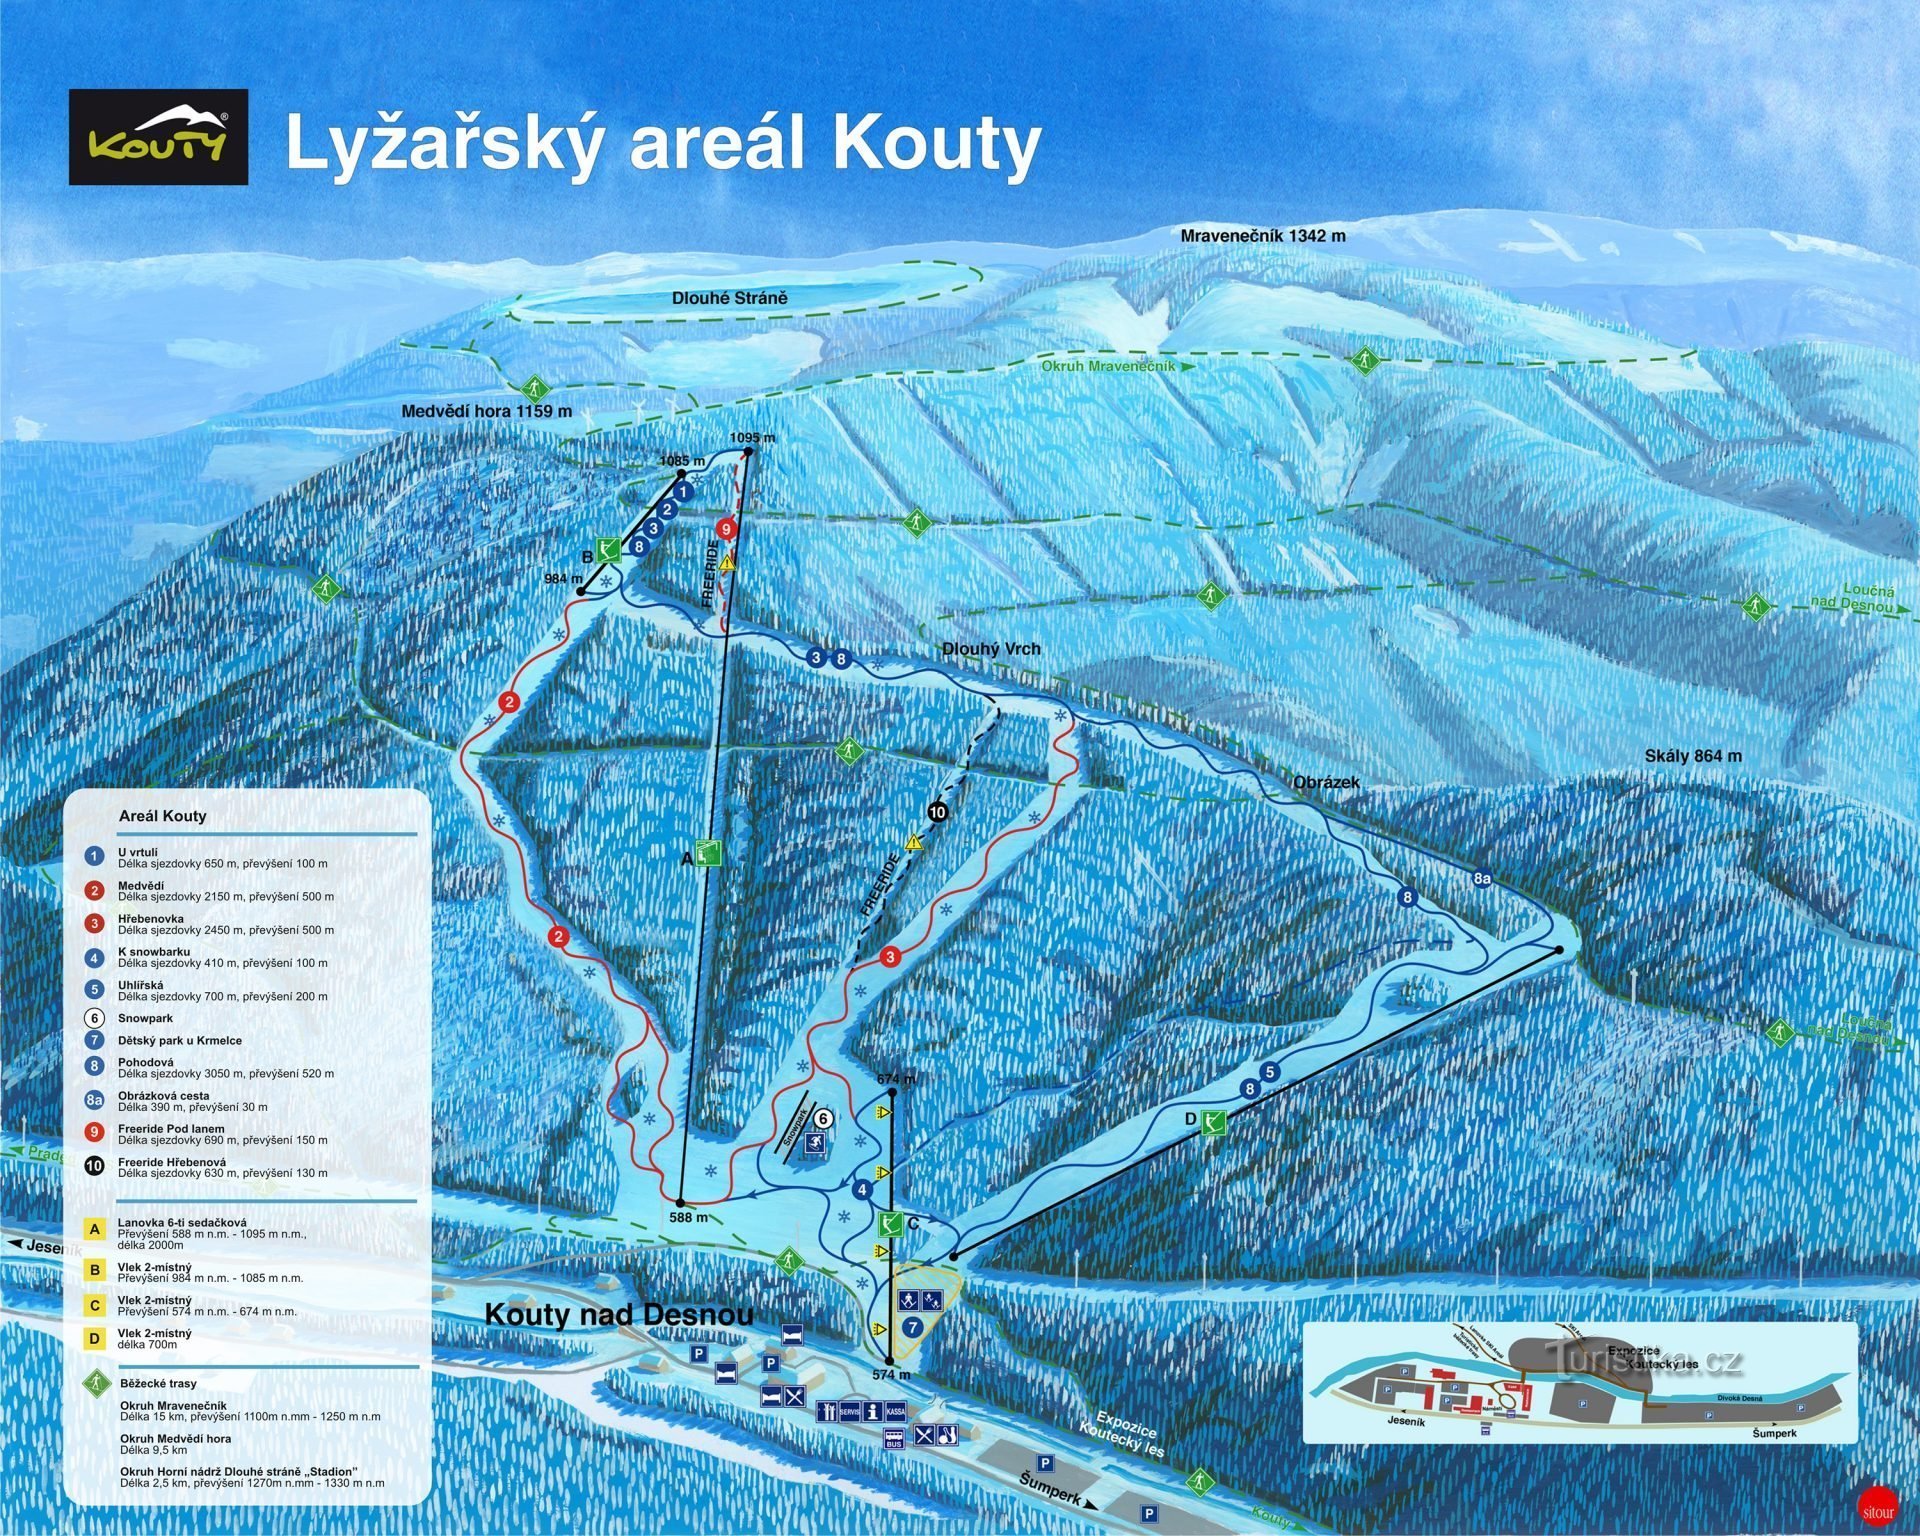 Estação de esqui Kouty nad Desnou